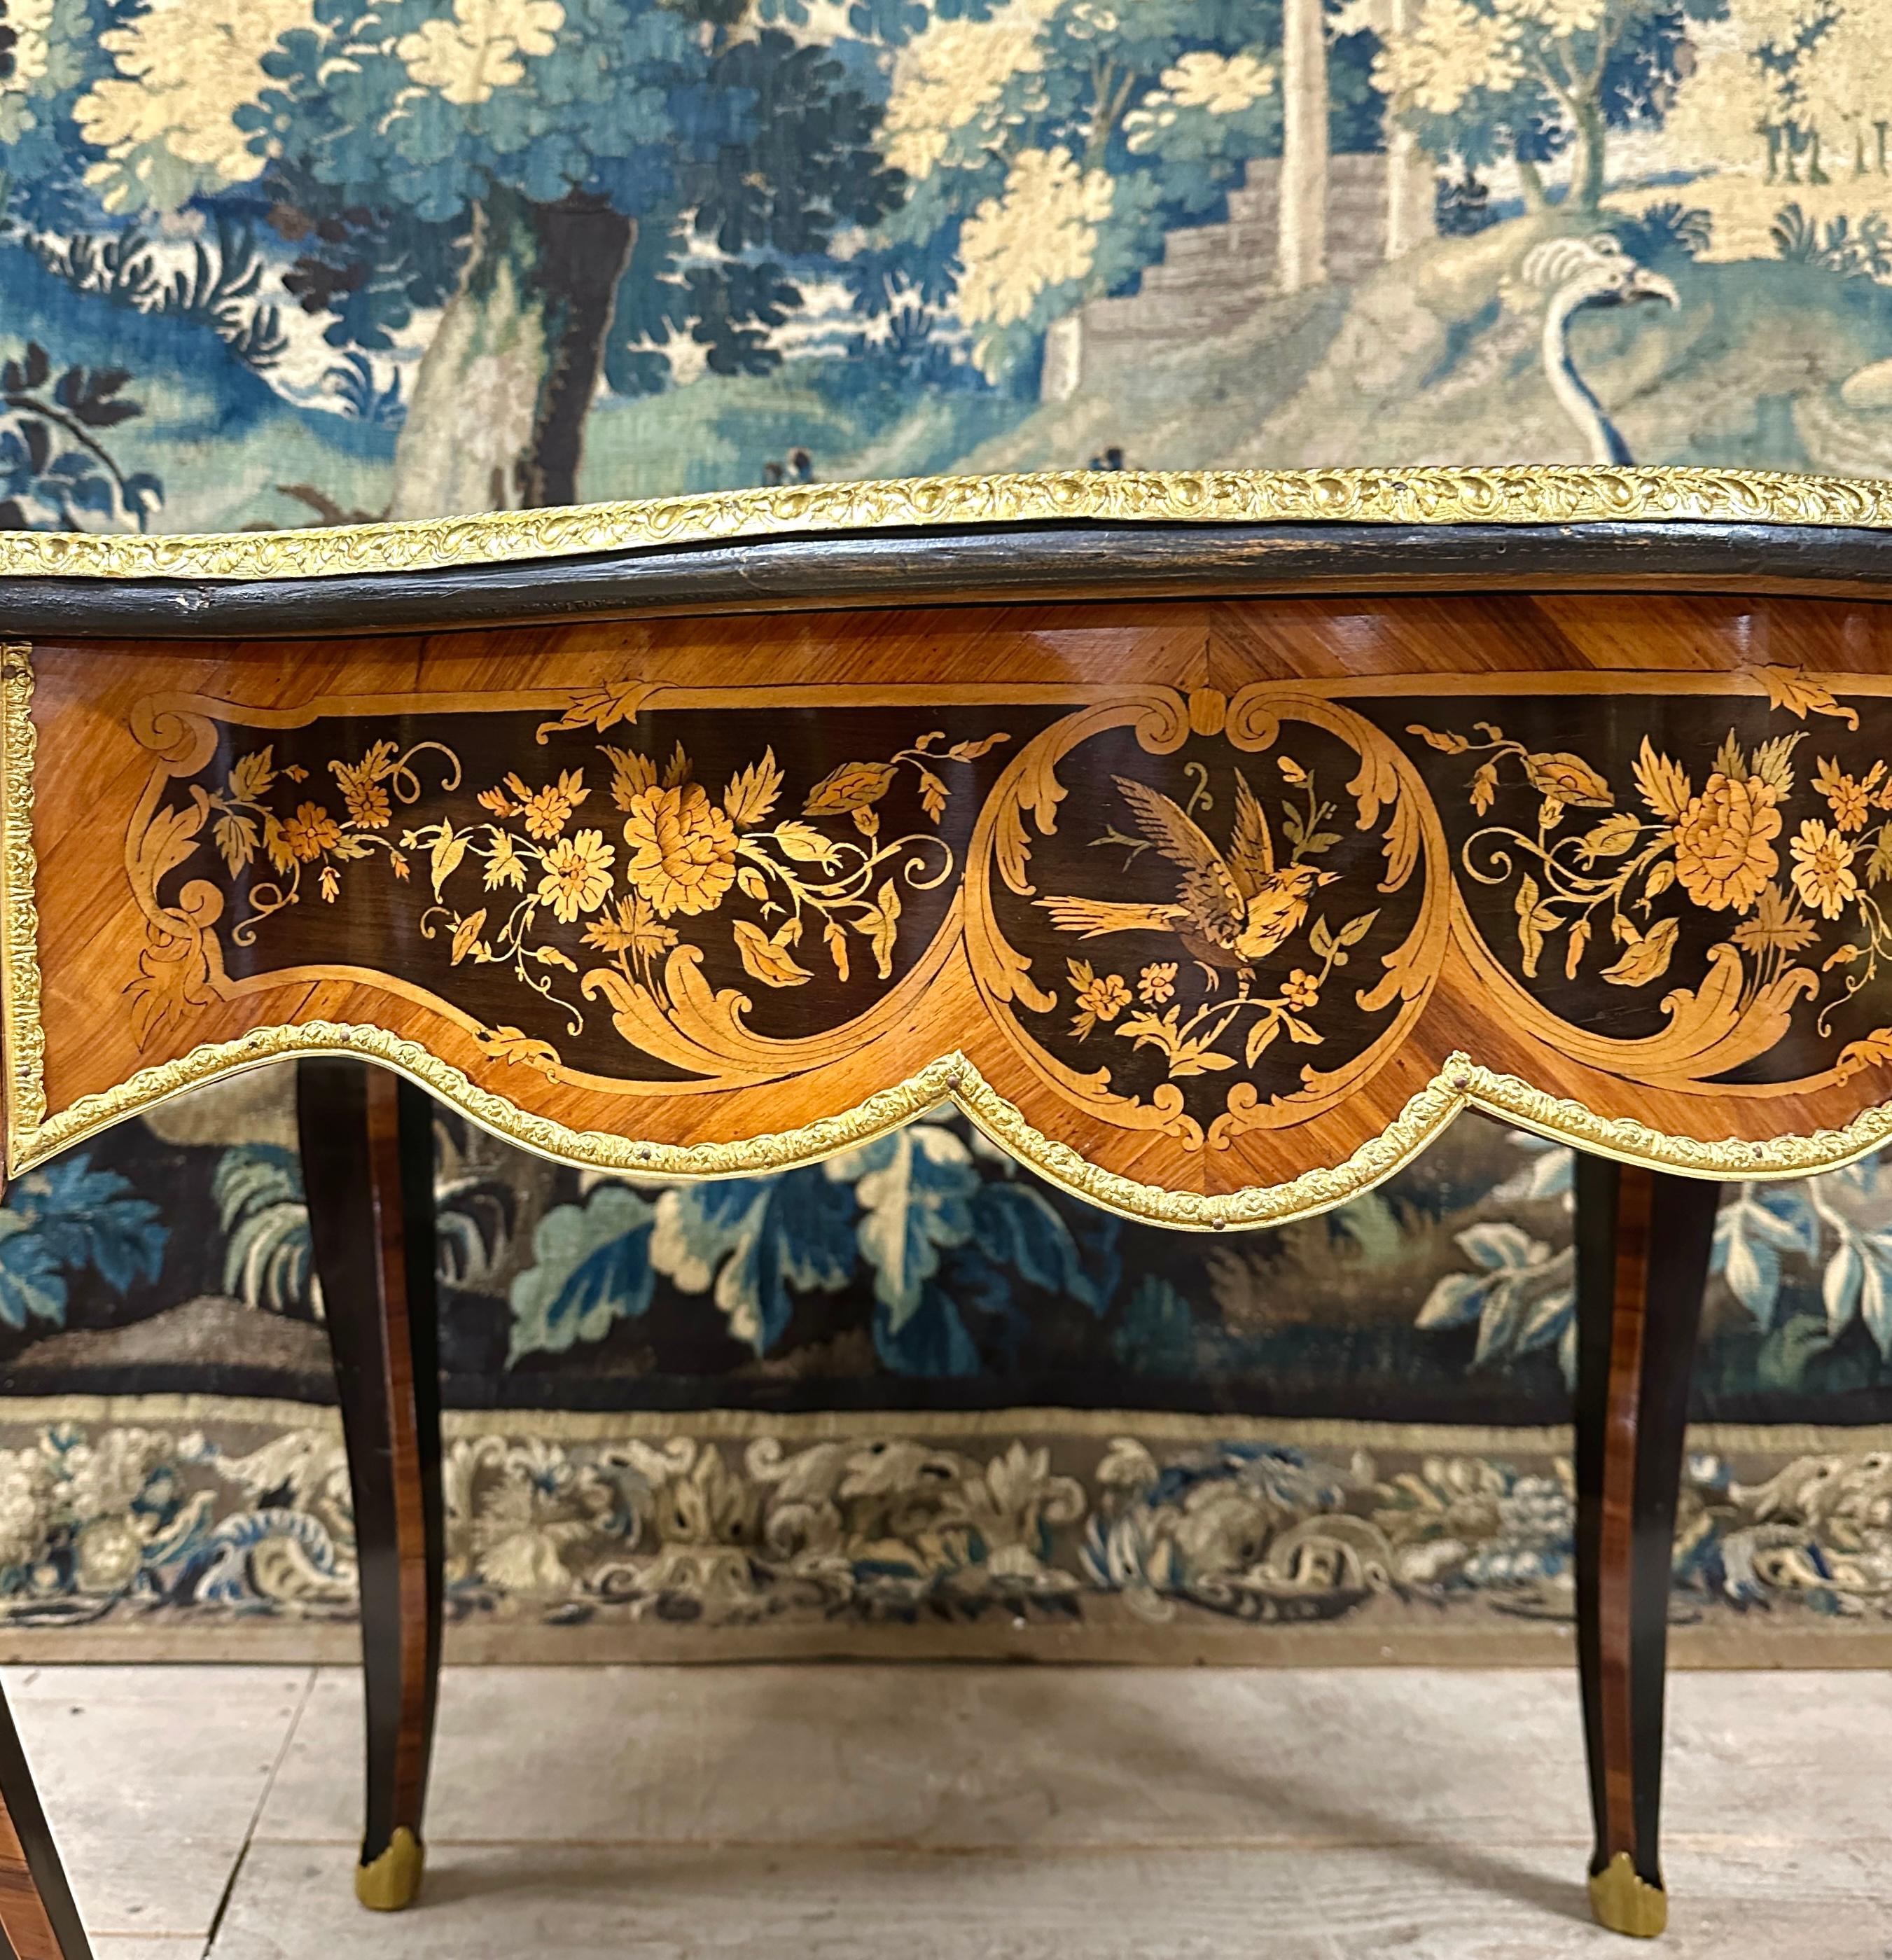 Riche table formant bureau, ouvrant par un tiroir en frise. Travail de style Louis XV d'époque Napoléon III avec un très beau plateau décoré de feuillages, fleurs, oiseaux dans des cartouches. Cette table est fabriquée à partir de nombreuses